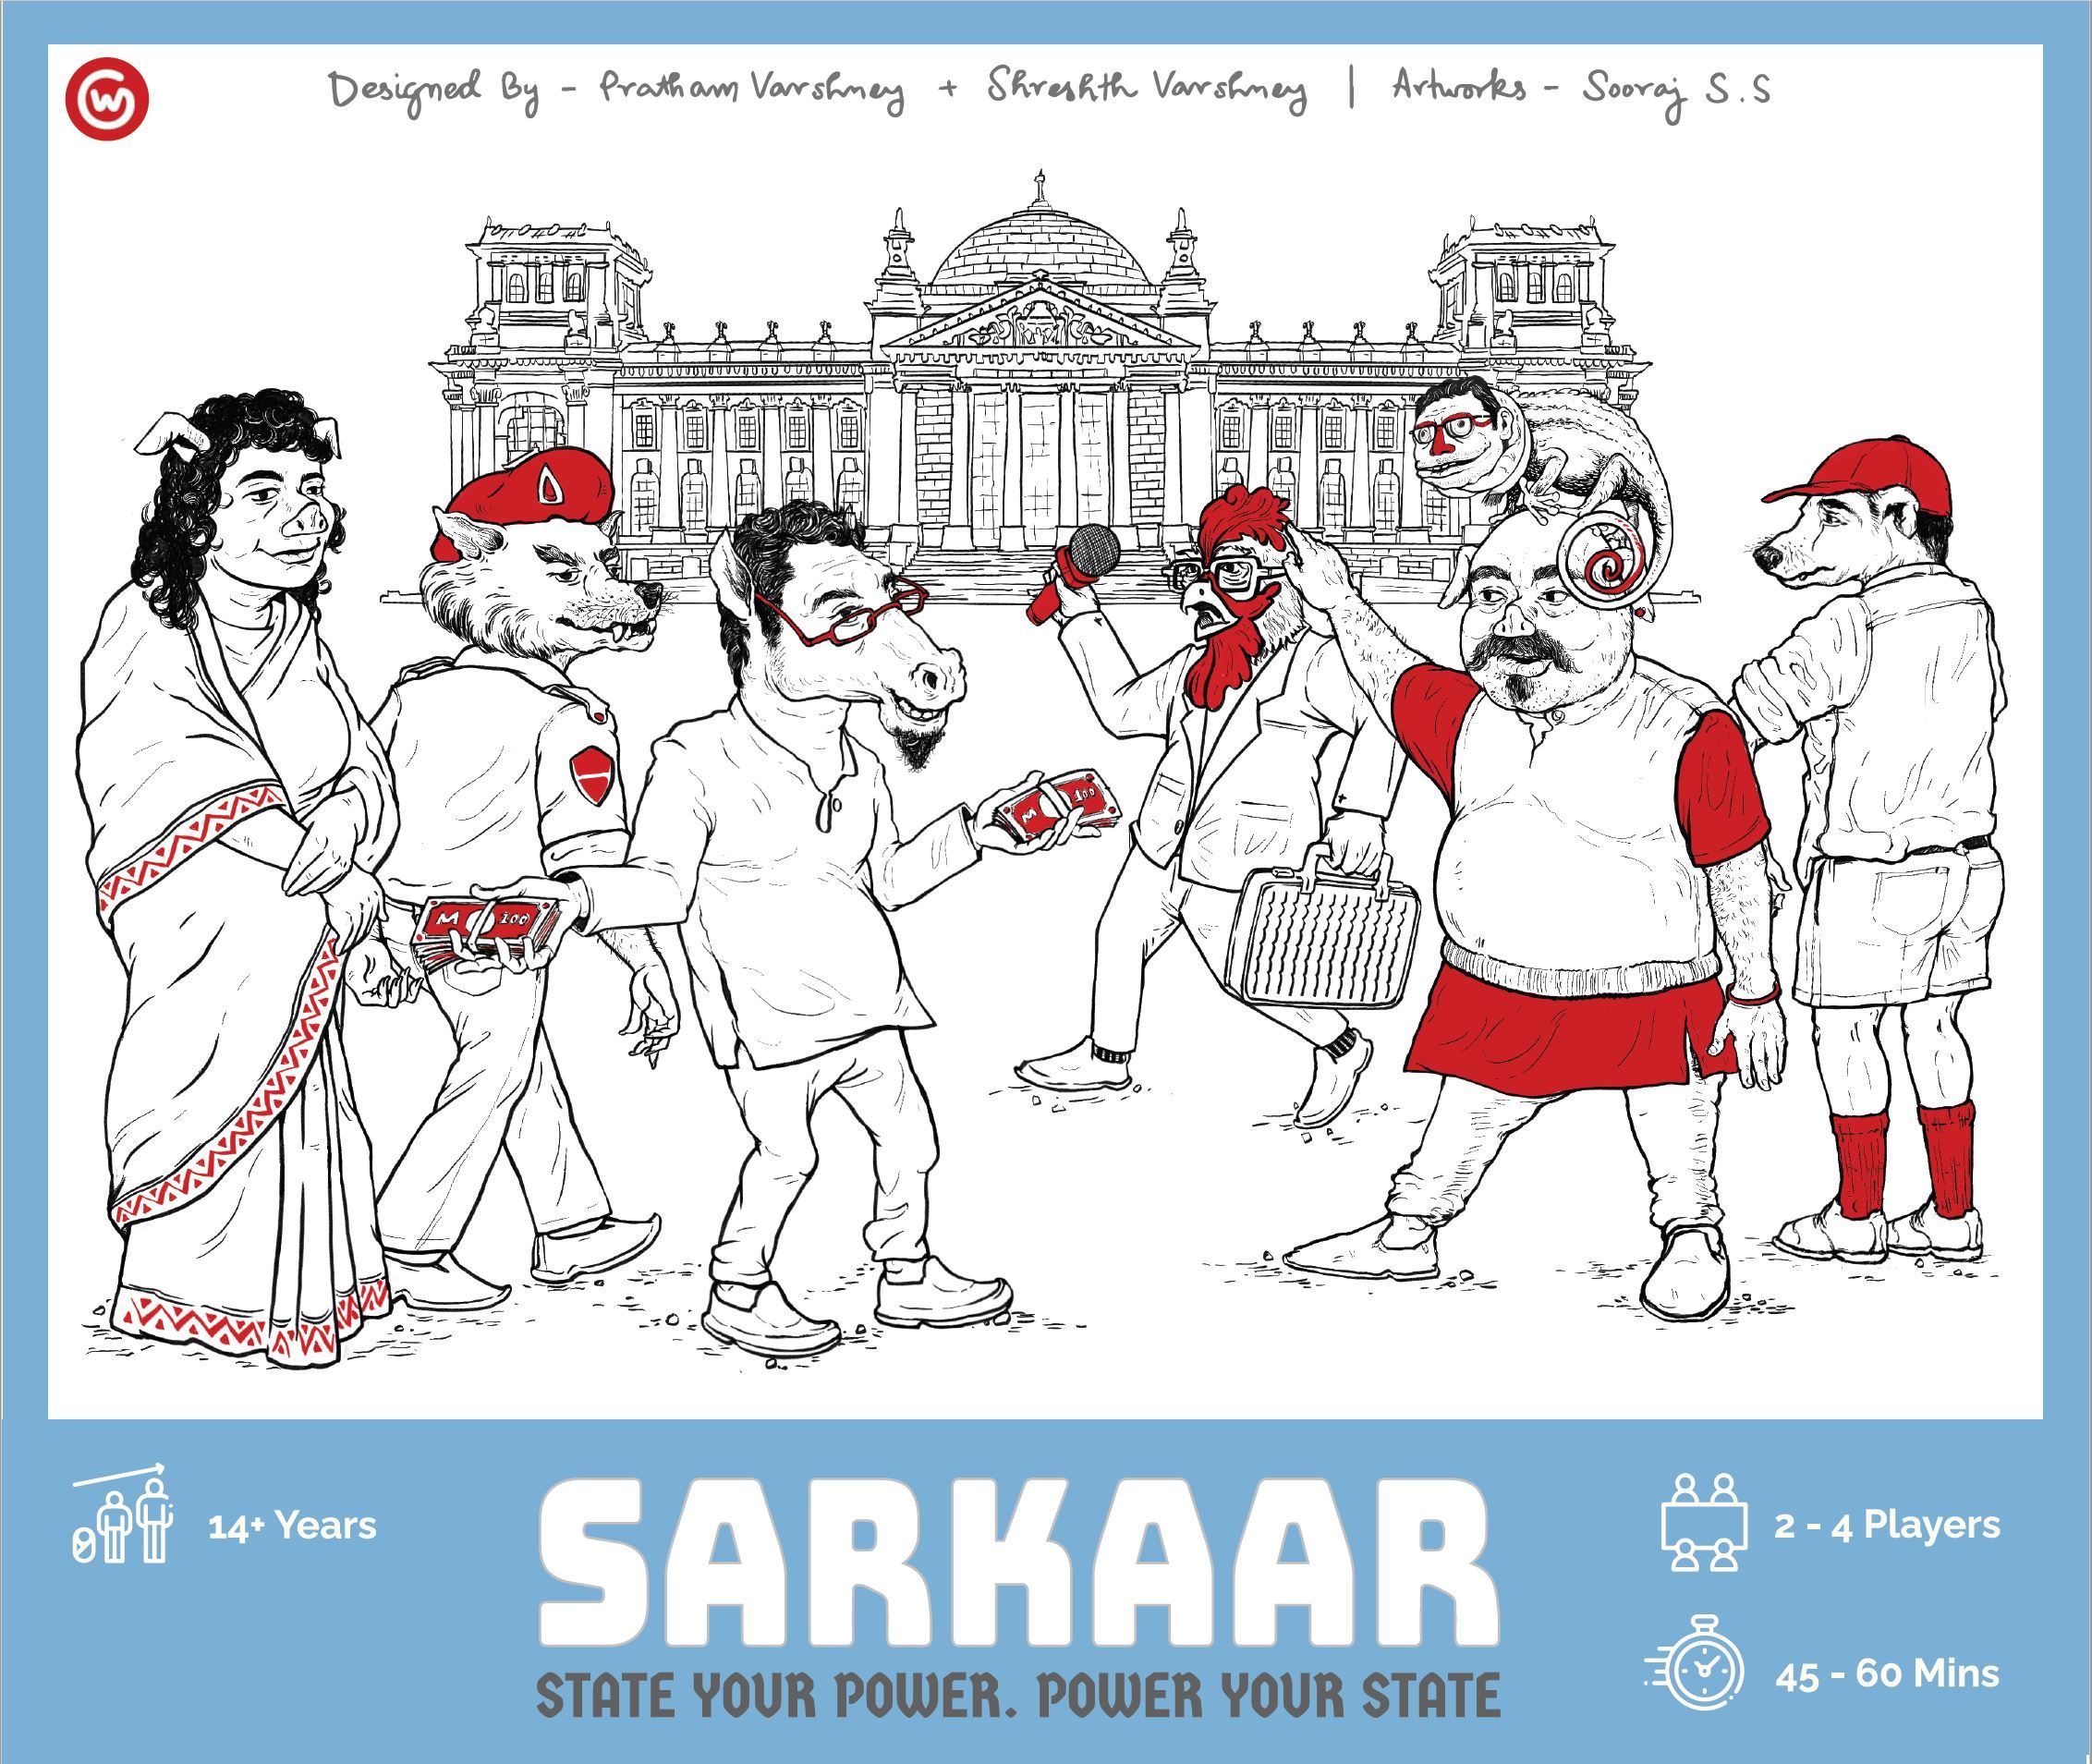 Sarkaar | Image | BoardGameGeek